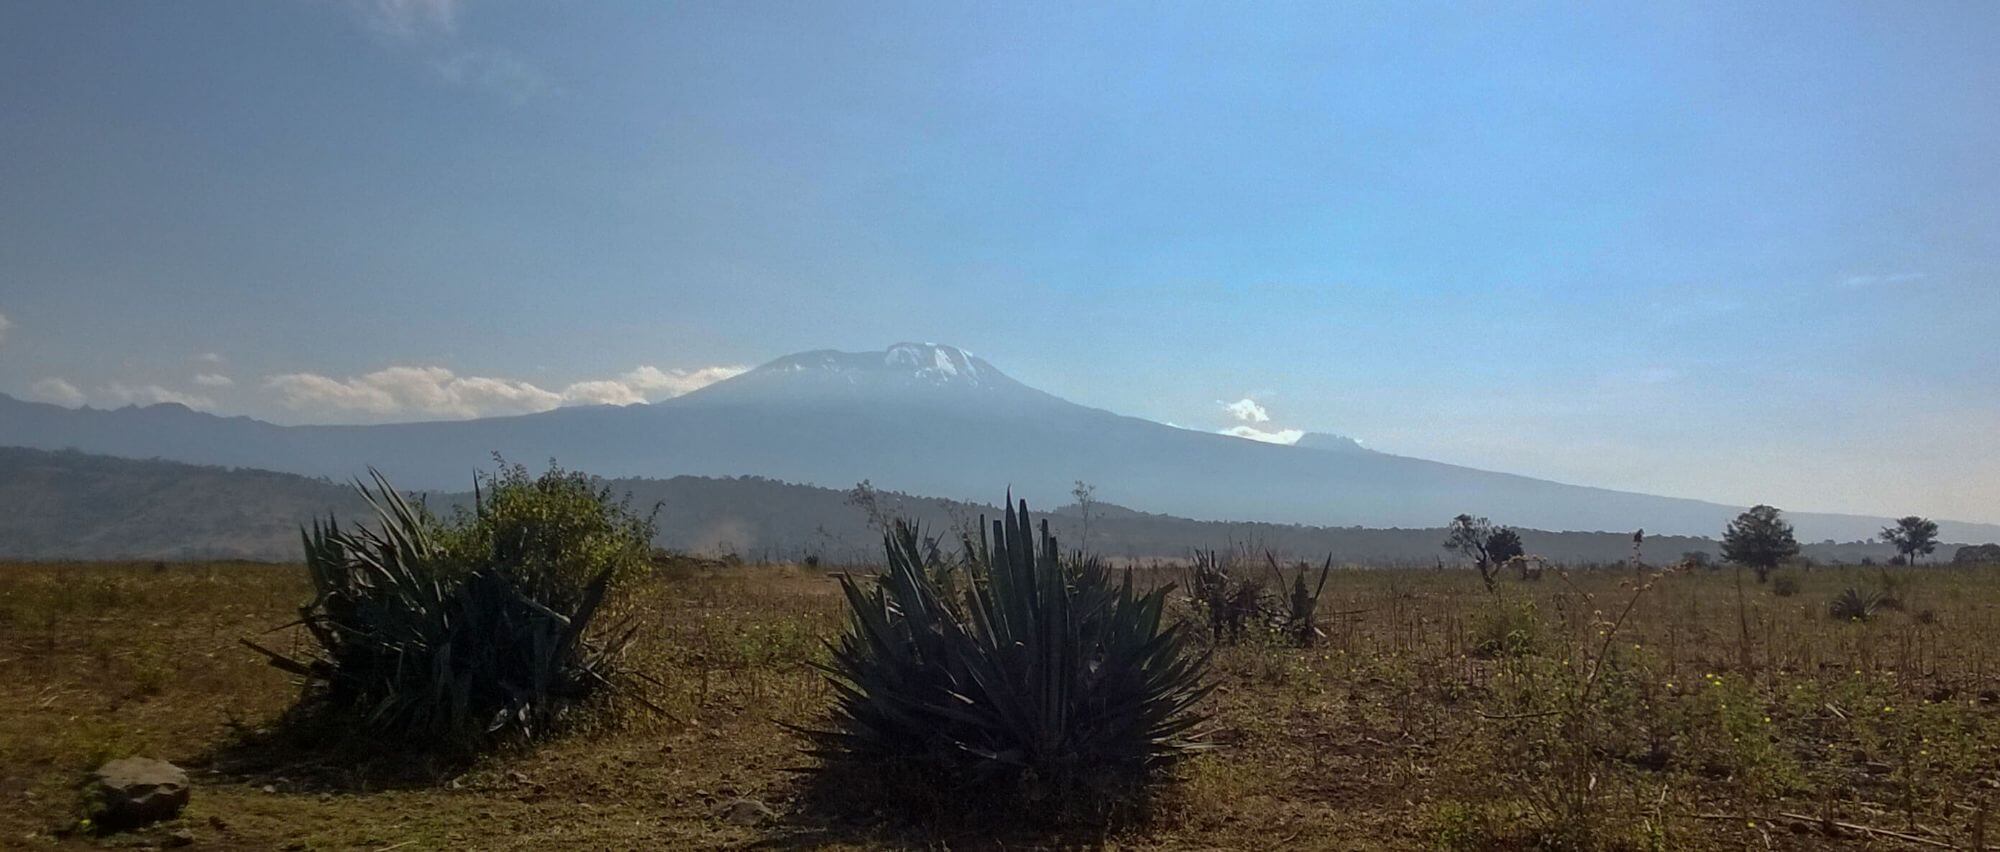 Remond,Antonin-Kilimanjaro-Lemosho8 - 